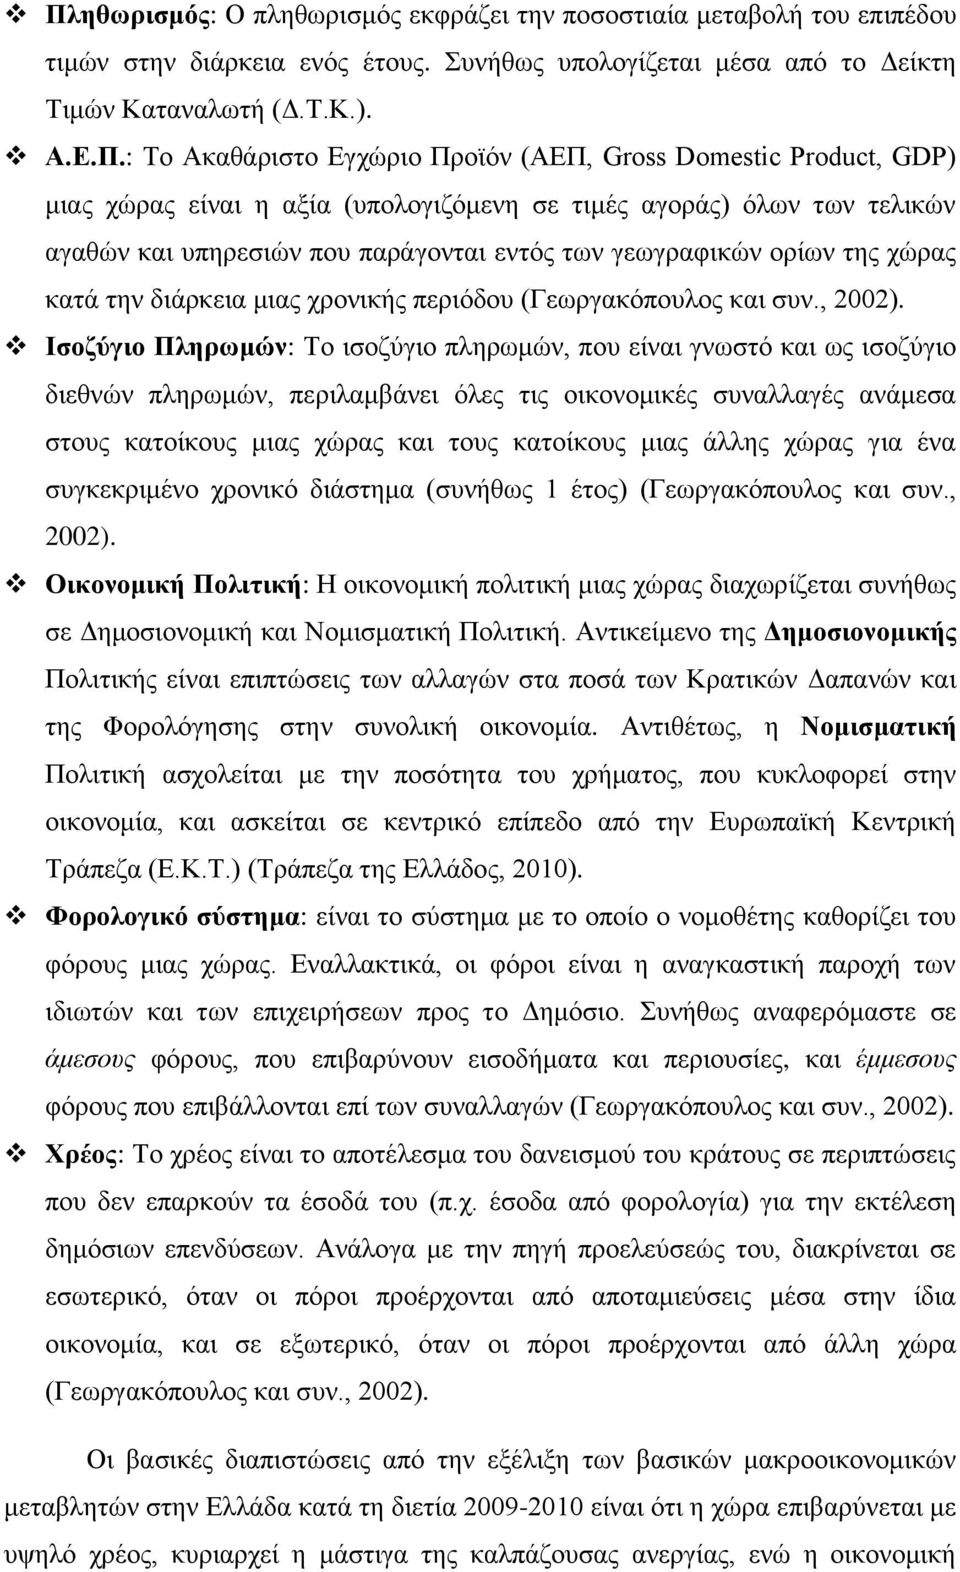 κατά την διάρκεια μιας χρονικής περιόδου (Γεωργακόπουλος και συν., 2002).